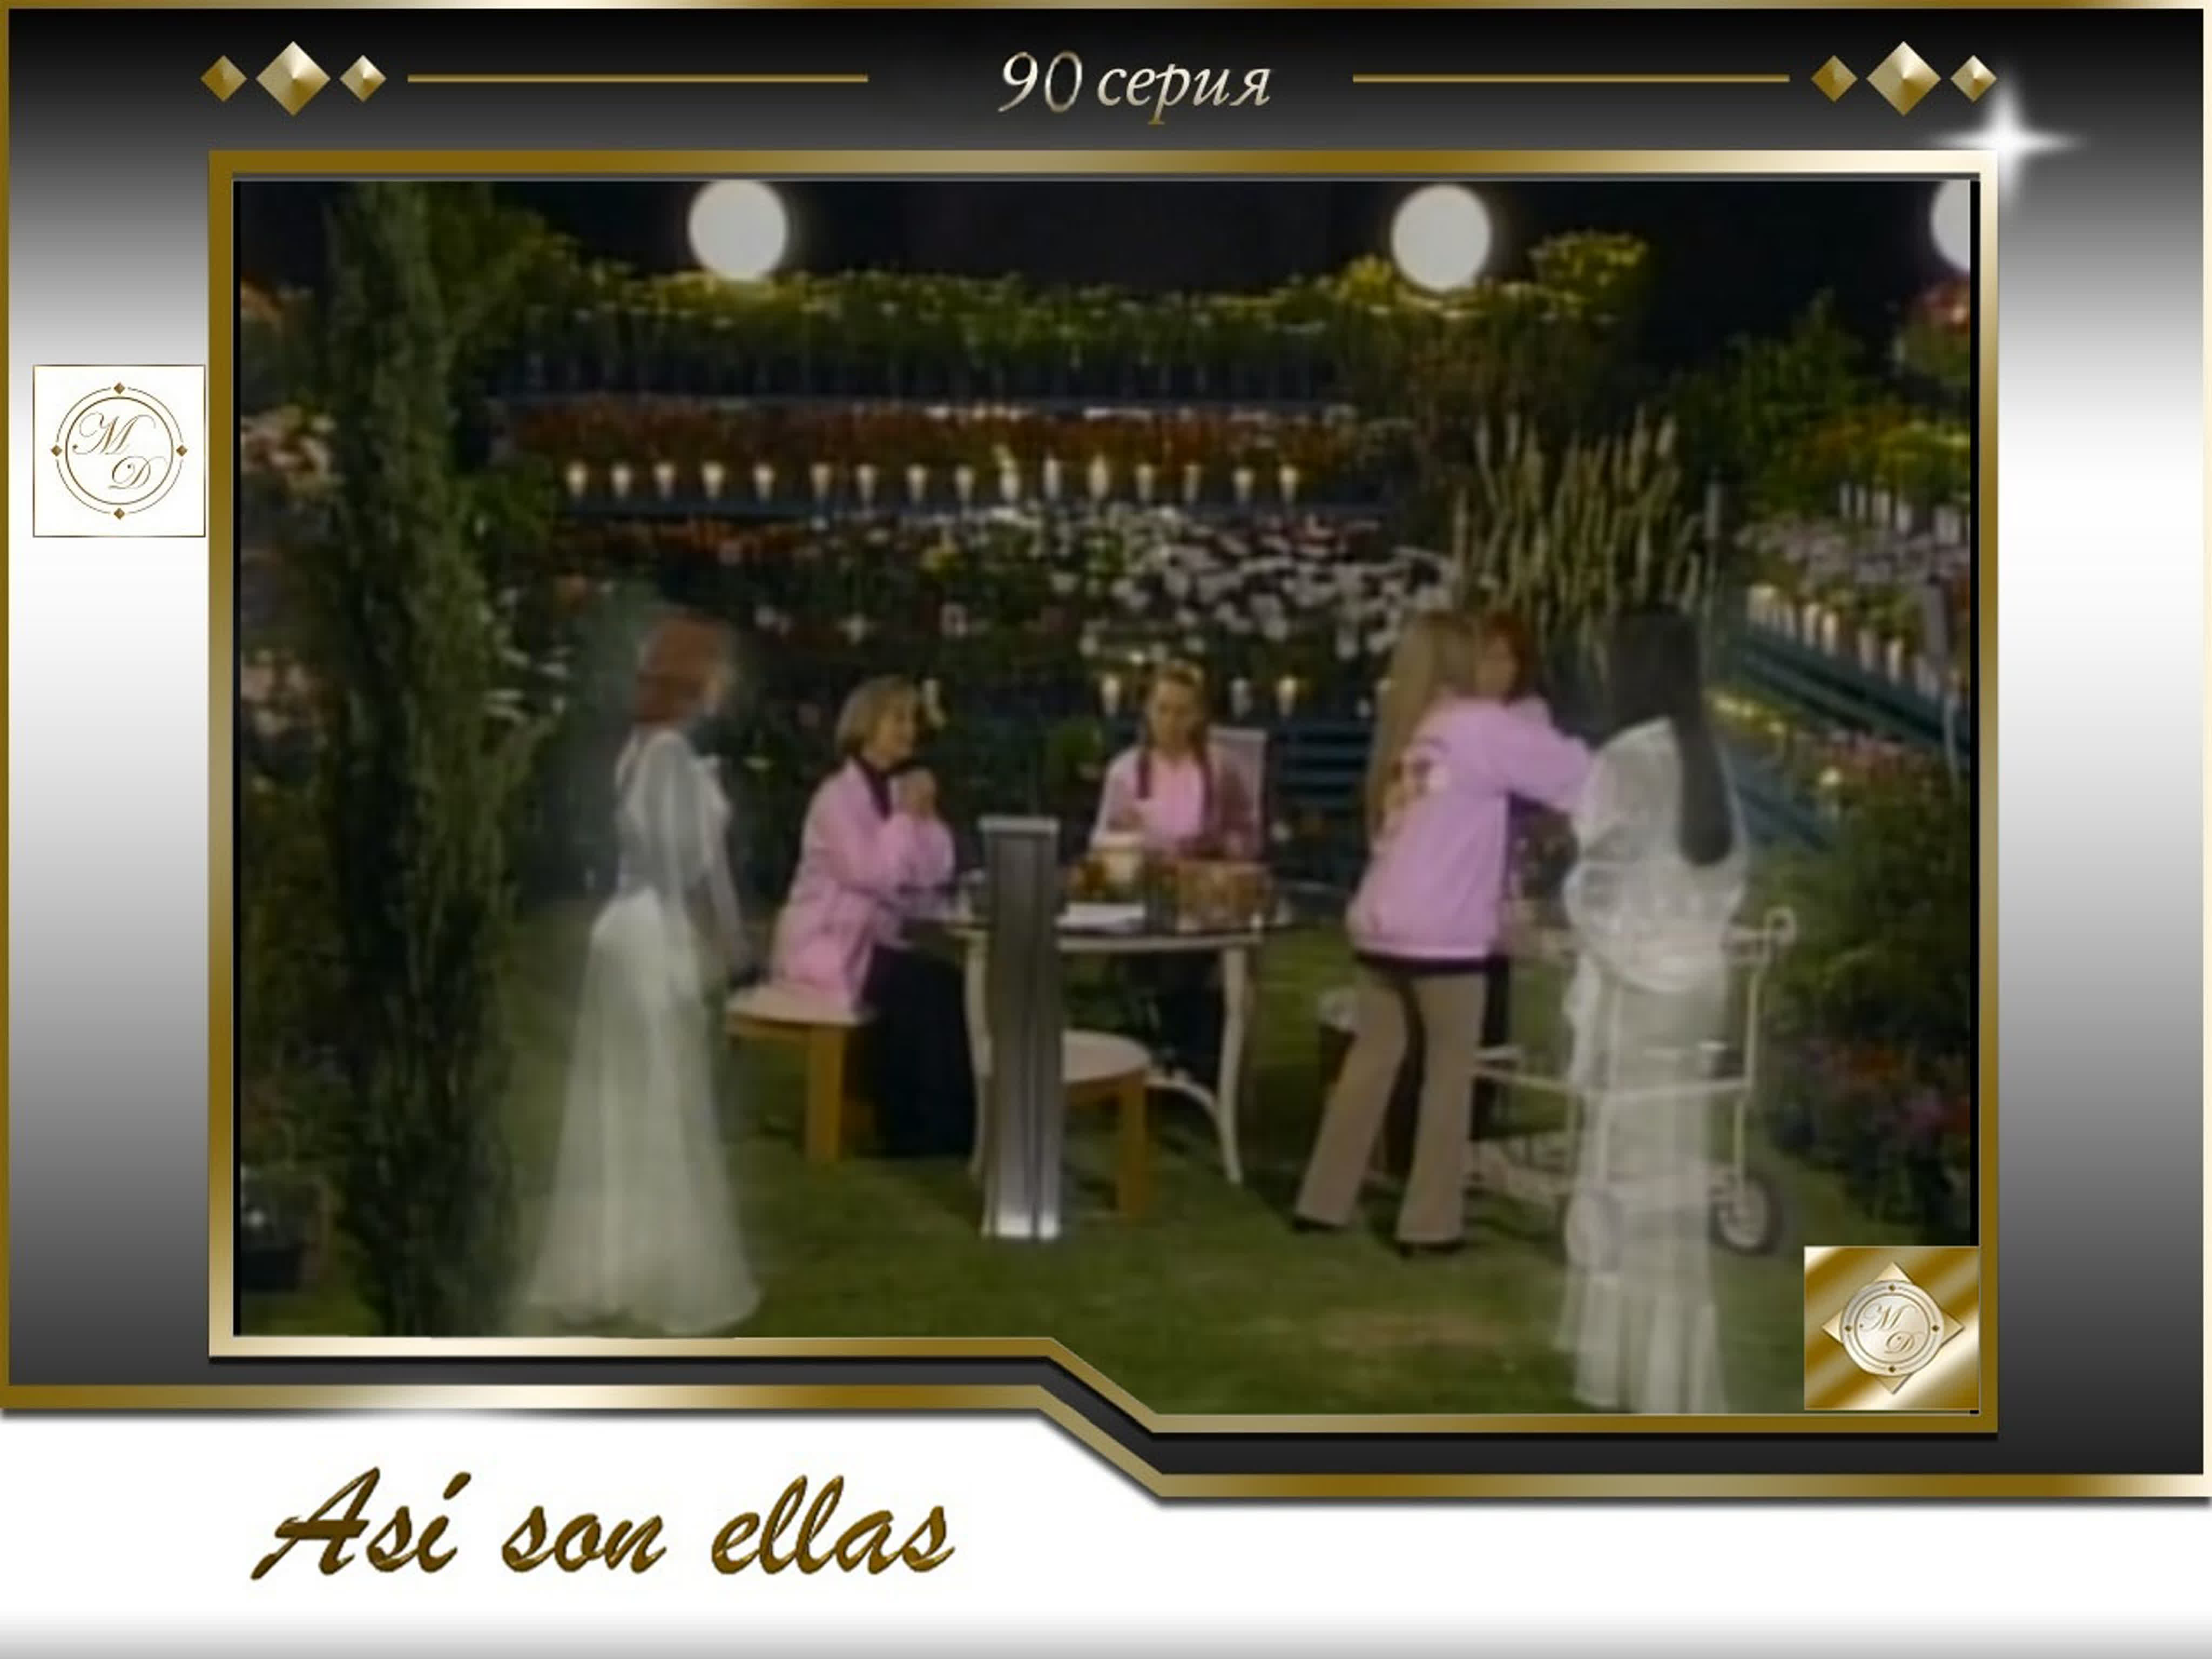 Así son ellas (Televisa 2002)